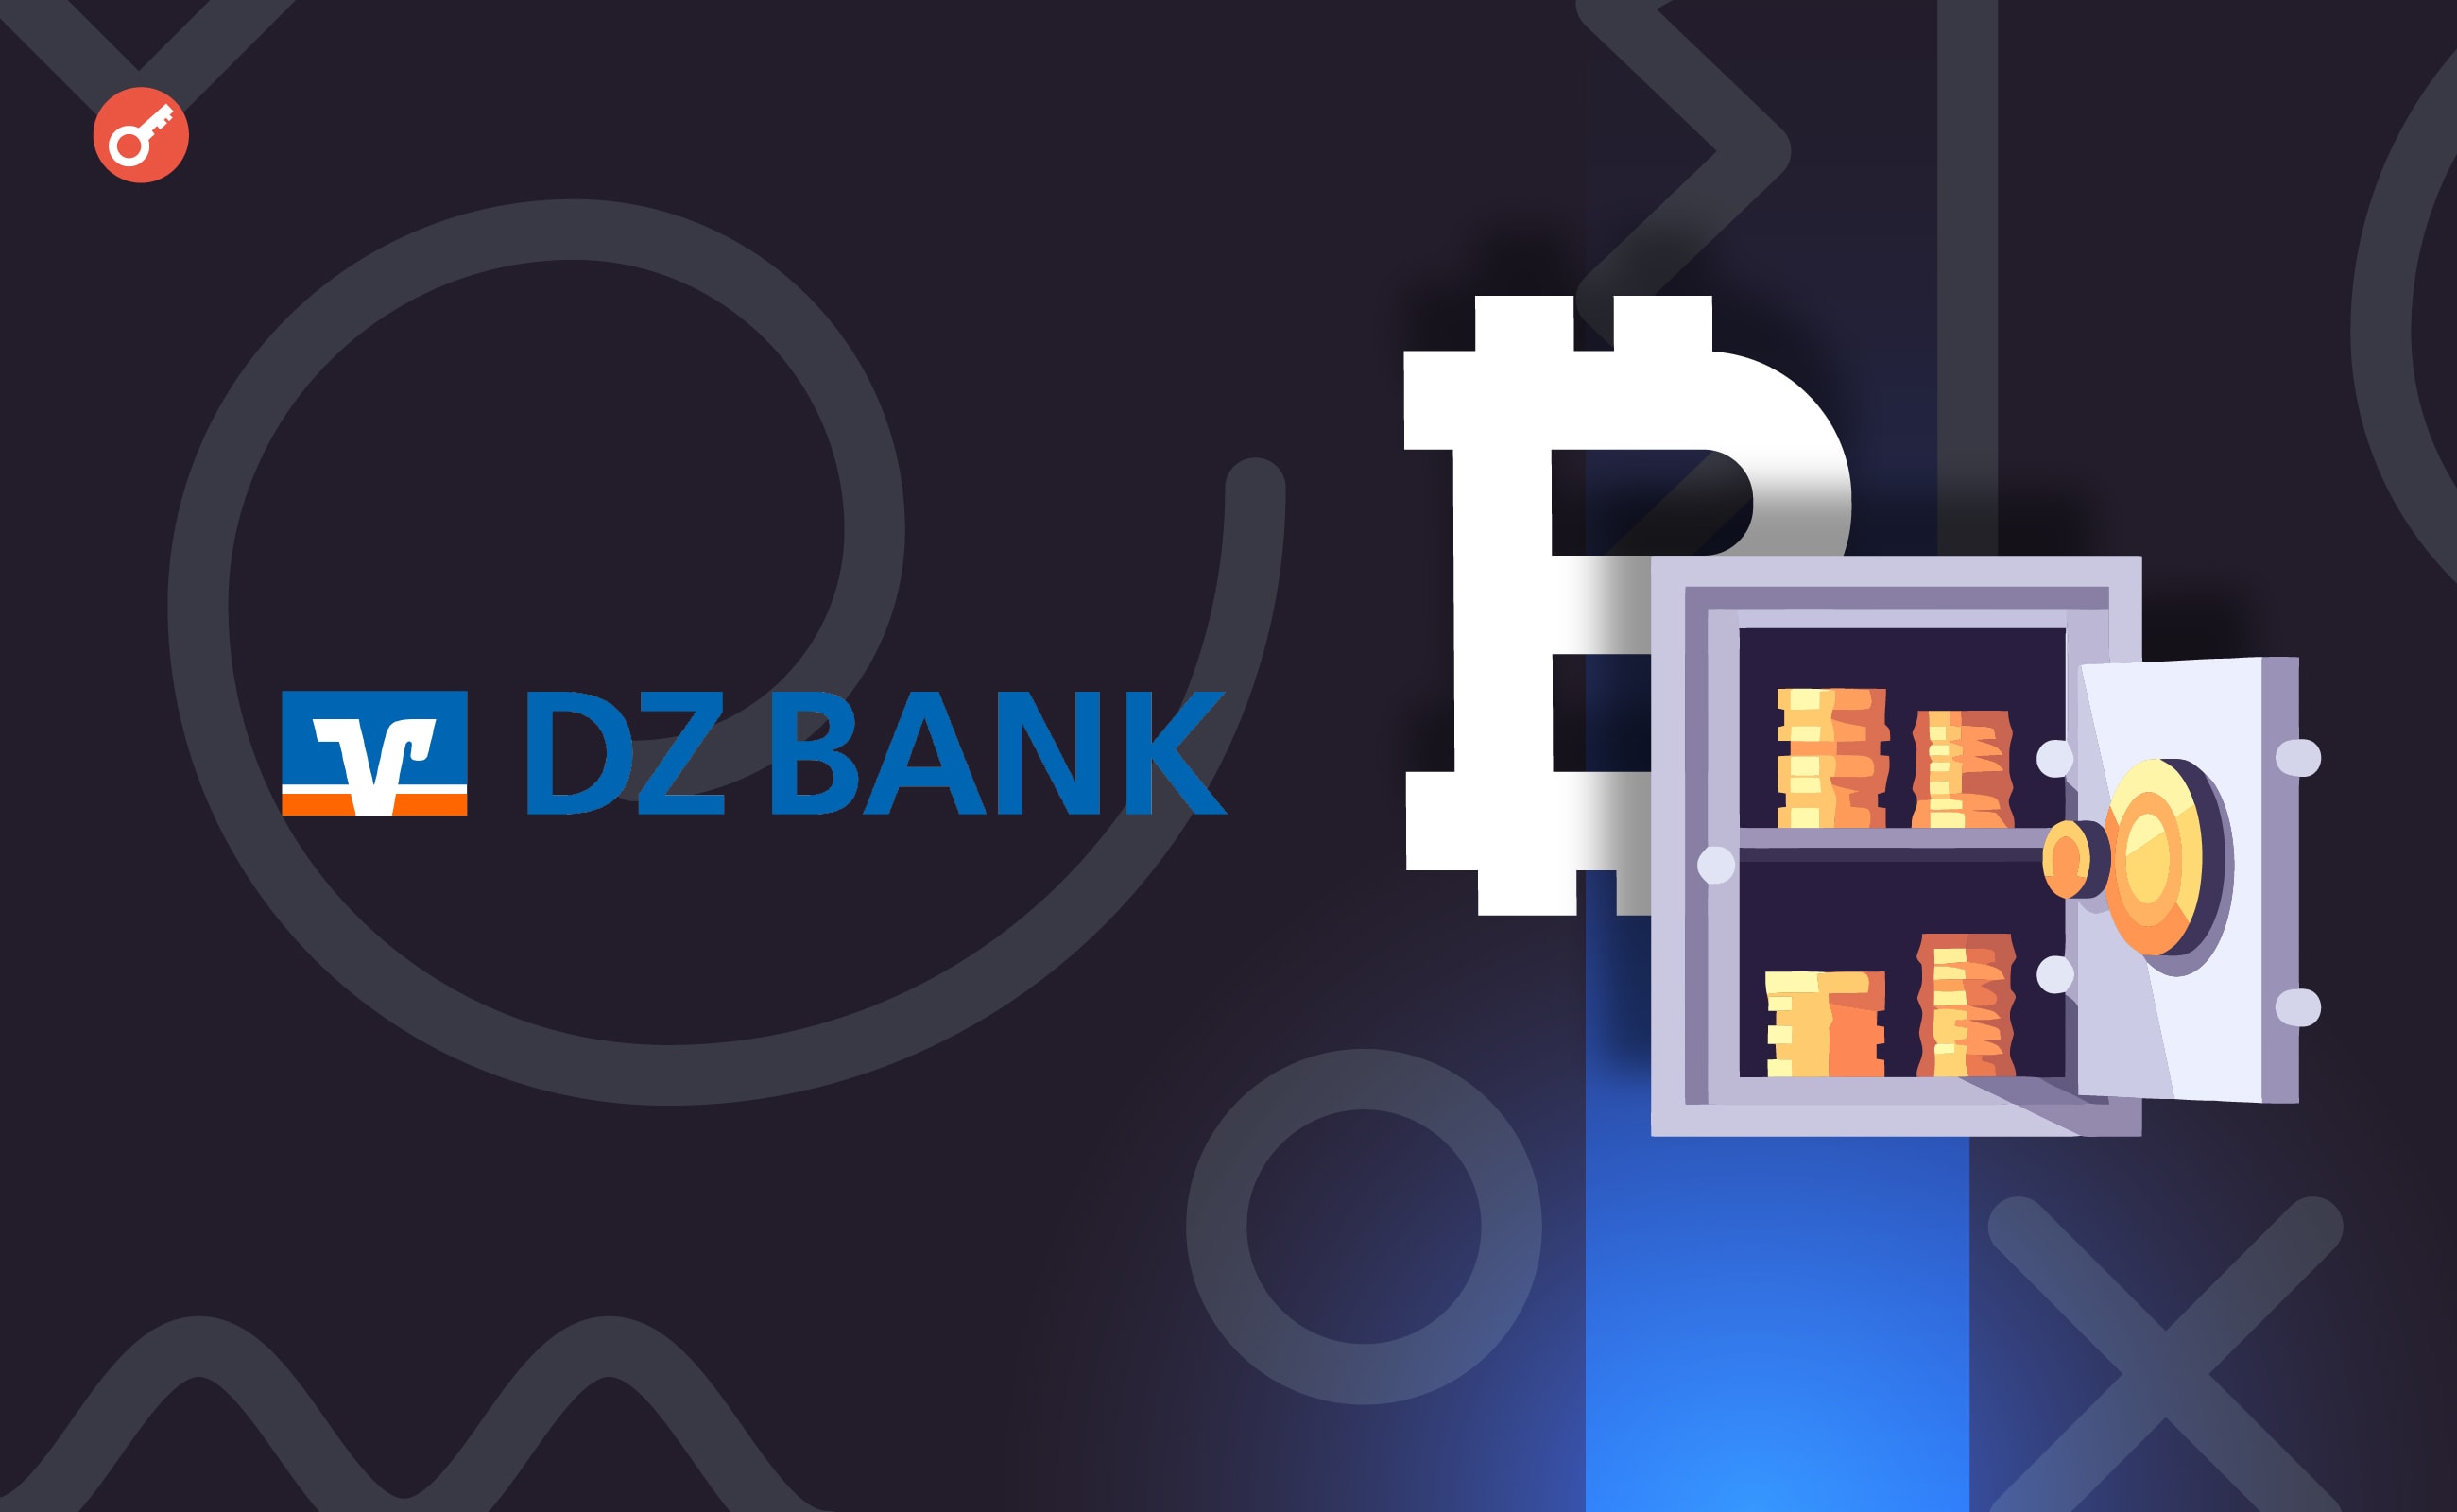 Німецький банк DZ Bank запропонує послугу зберігання криптовалют. Головний колаж новини.